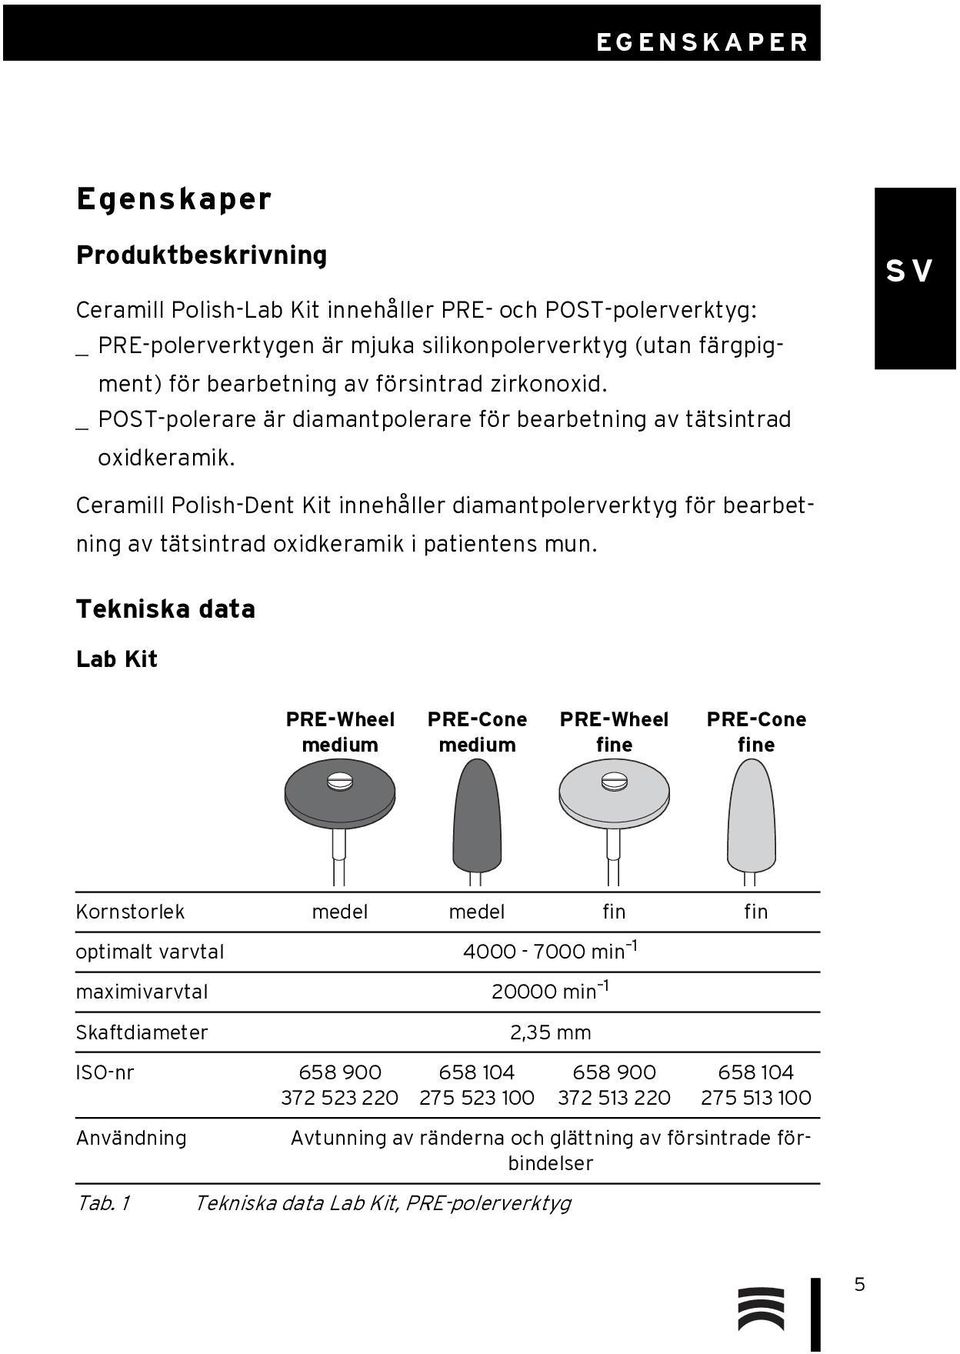 Ceramill Polish-Dent Kit innehåller diamantpolerverktyg för bearbetning av tätsintrad oxidkeramik i patientens mun.